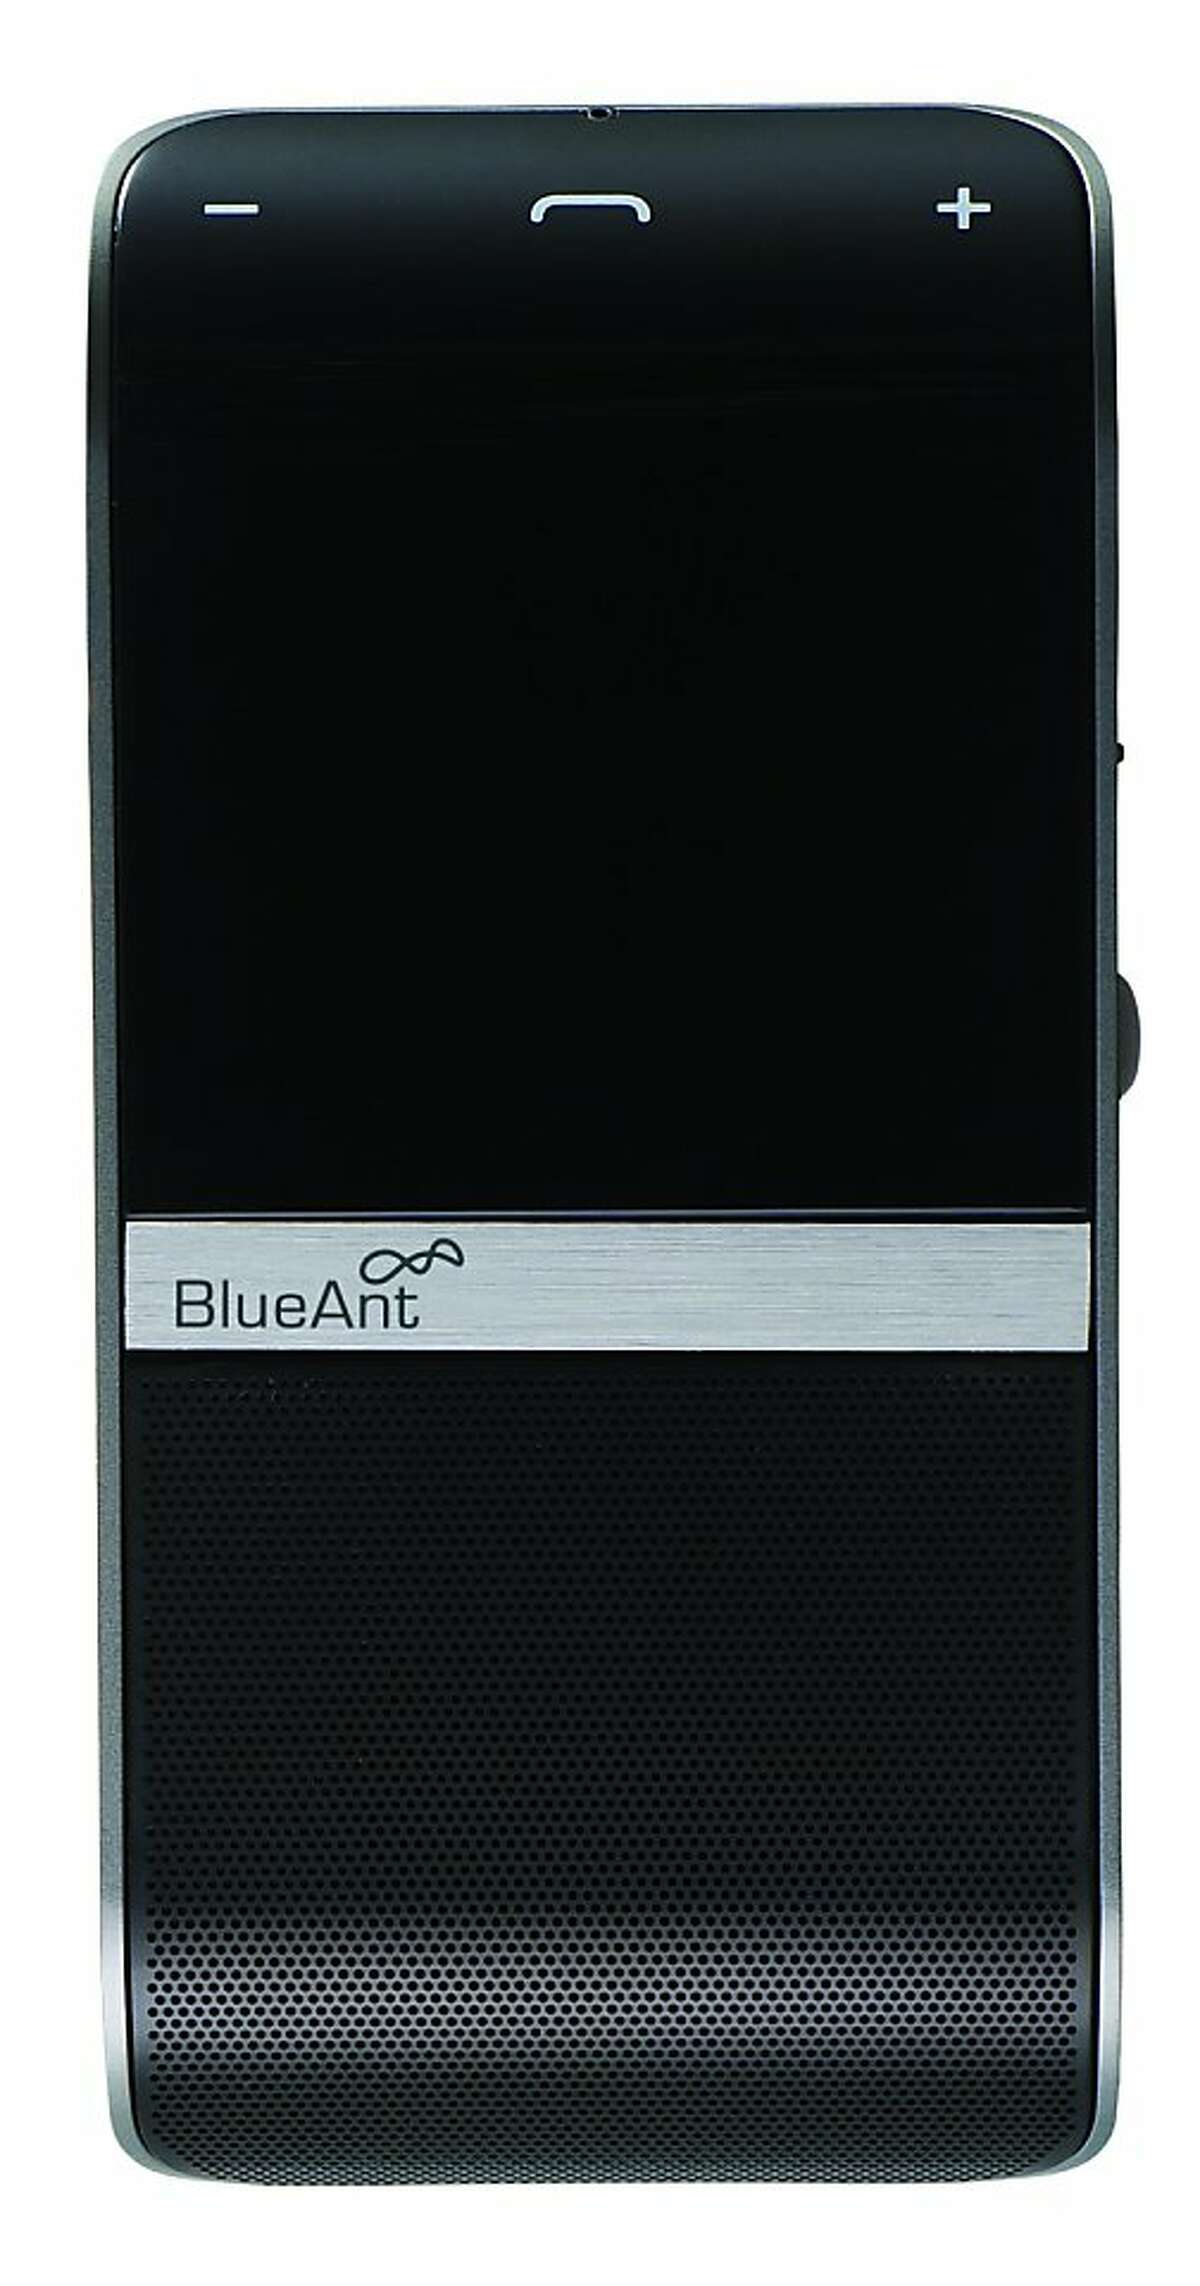 BlueAnt S4 Bluetooth Stereo Speaker